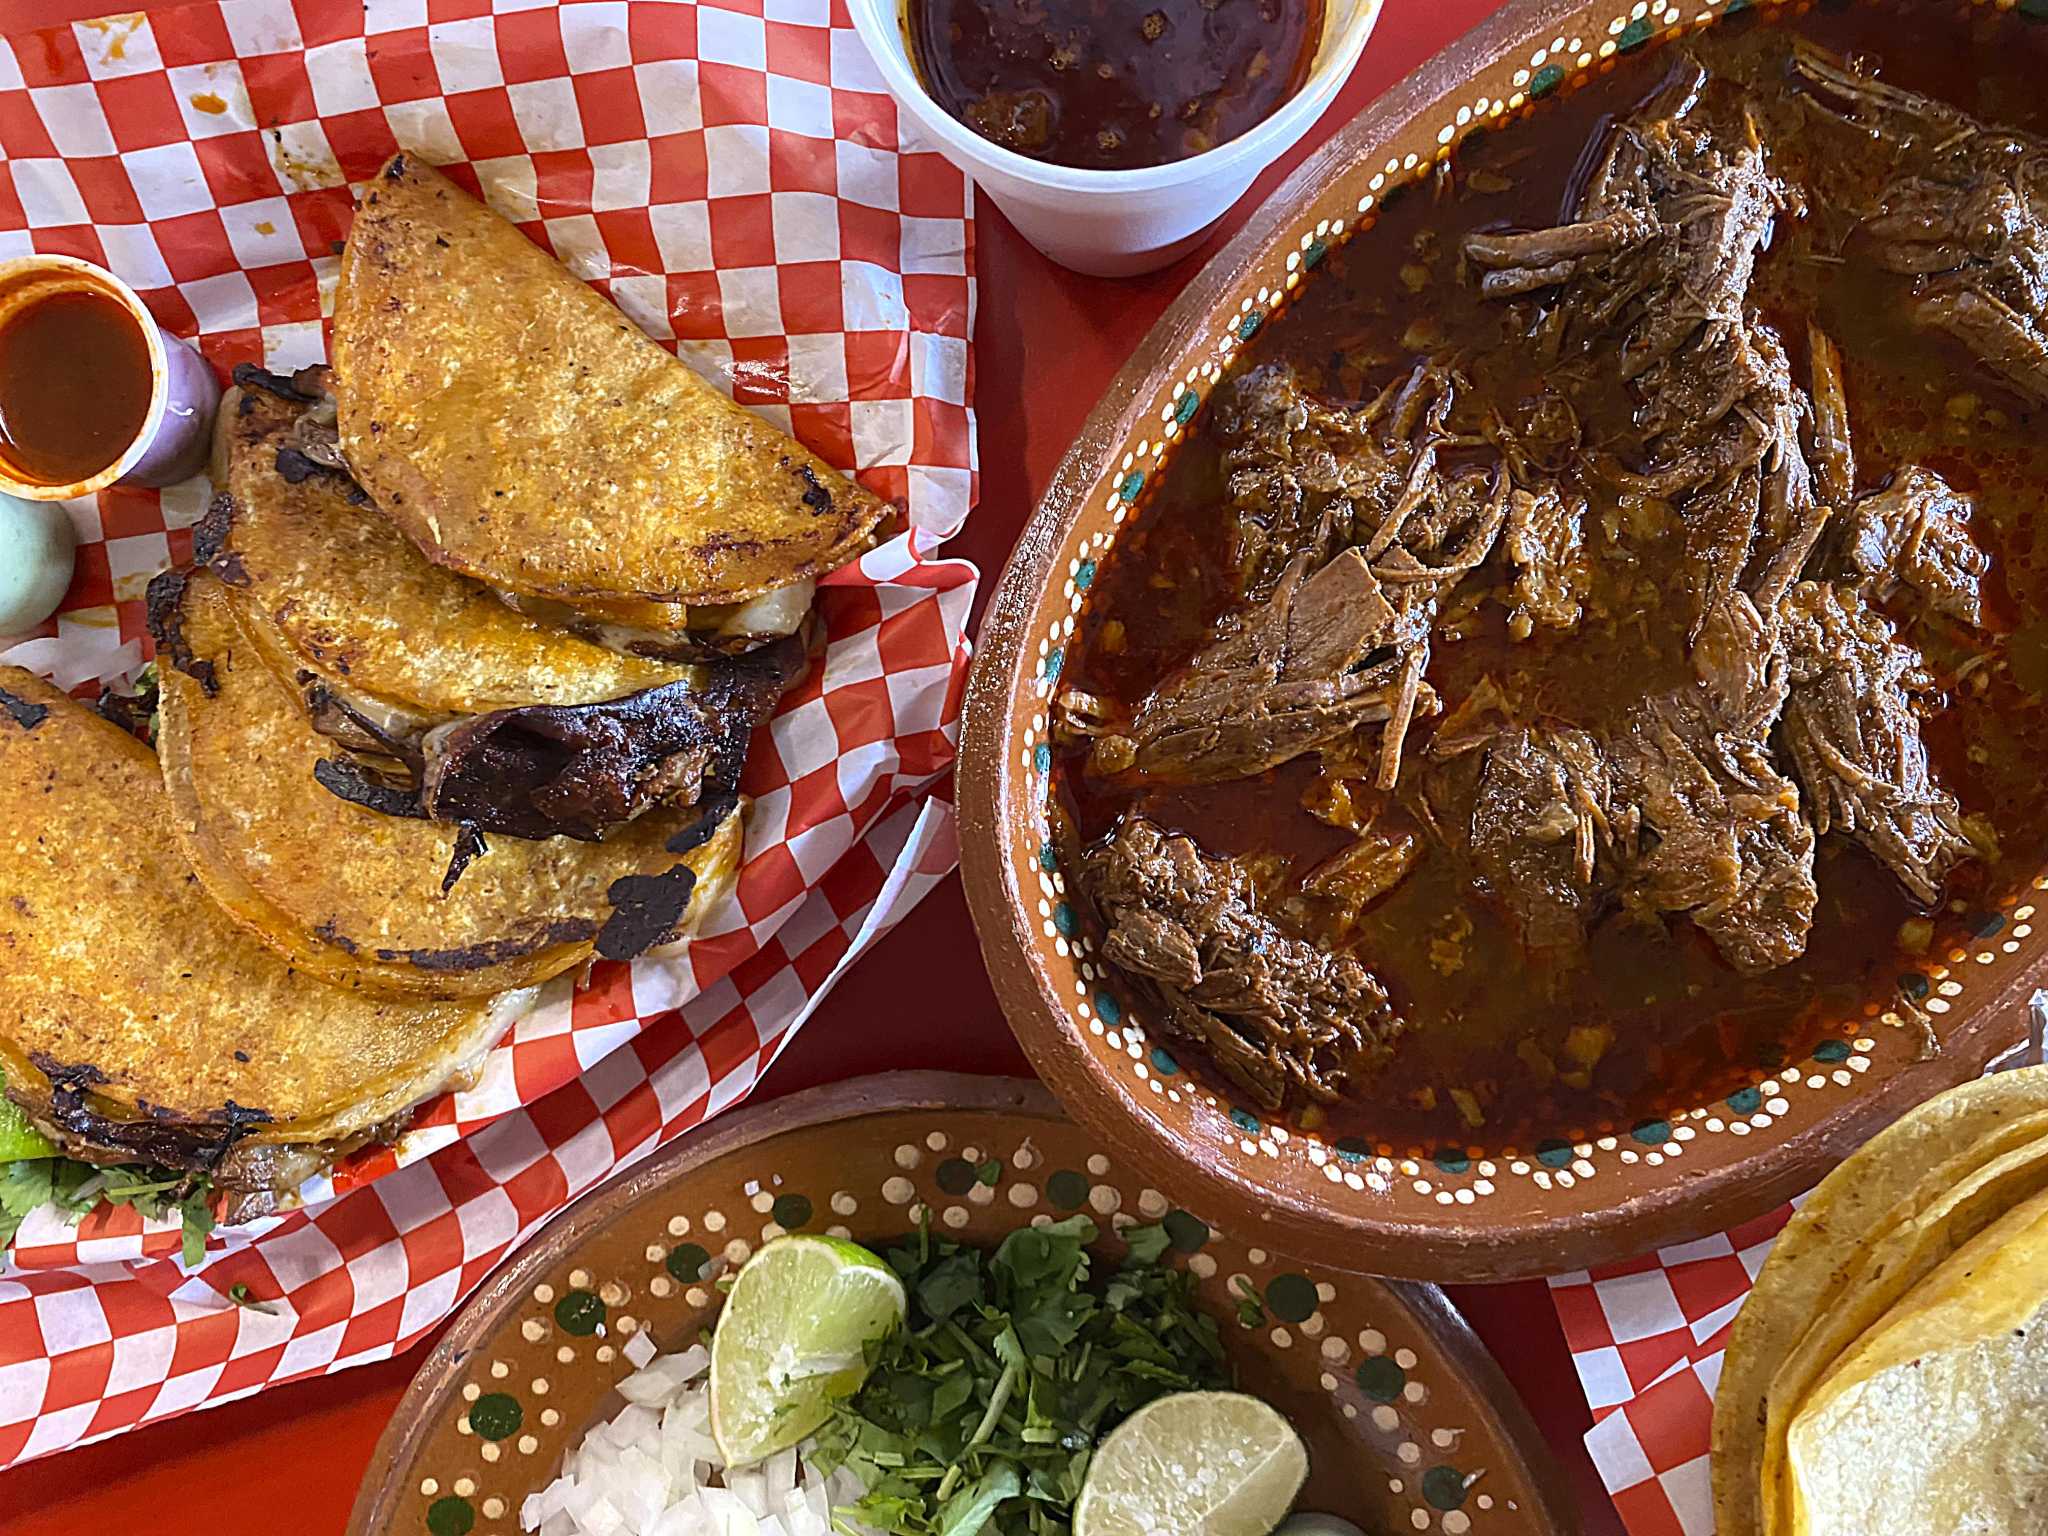 5 great Mexican restaurants for birria tacos in San Antonio: Birotes